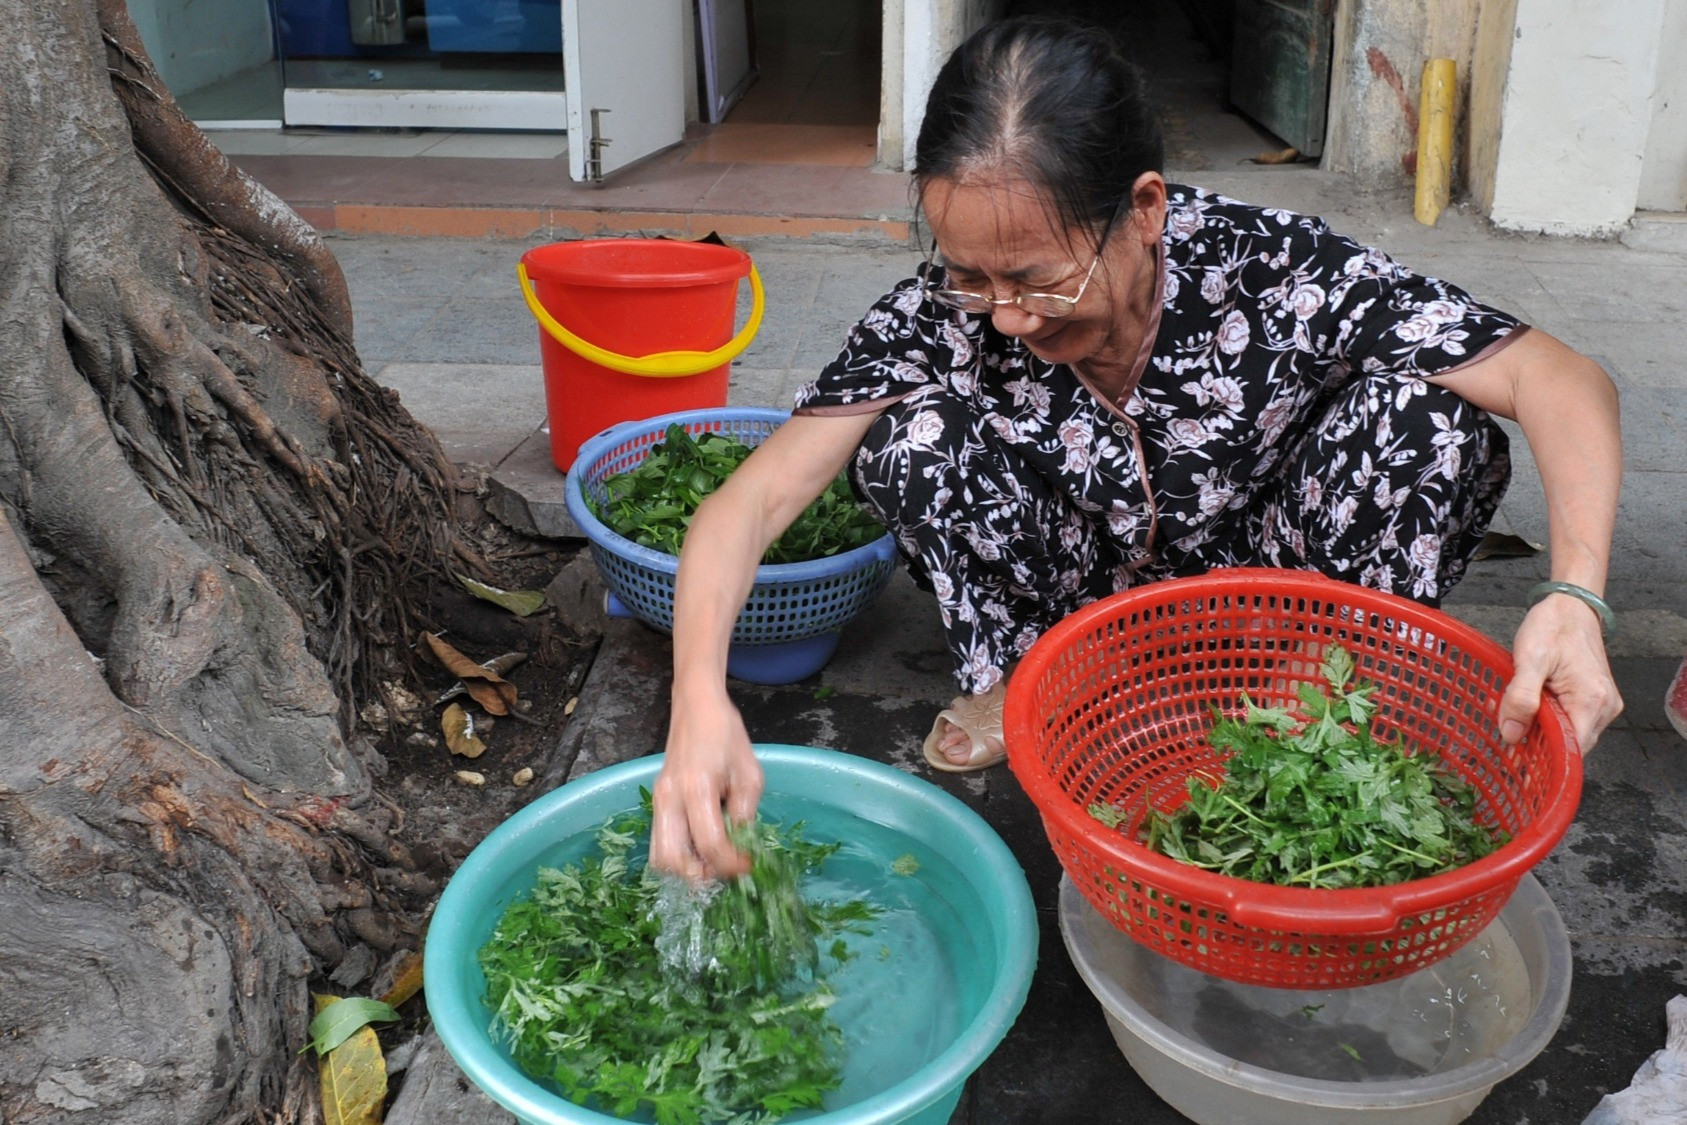 Áp lực từ 'cơn bão dân số già' ở Việt Nam